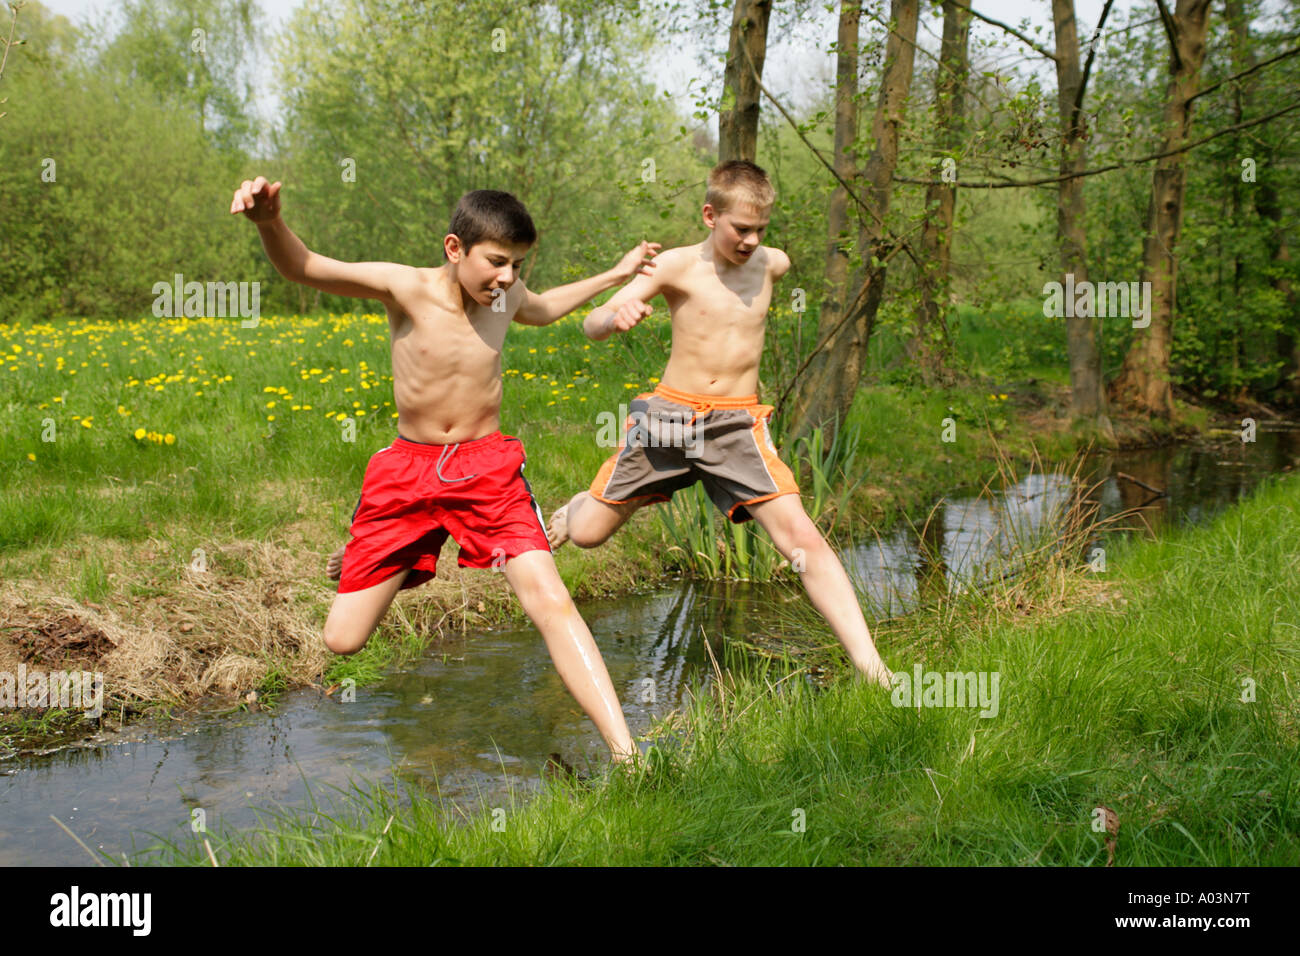 Zwei Jungen Barfuß über Einen Bach Springen Stockfotografie Alamy